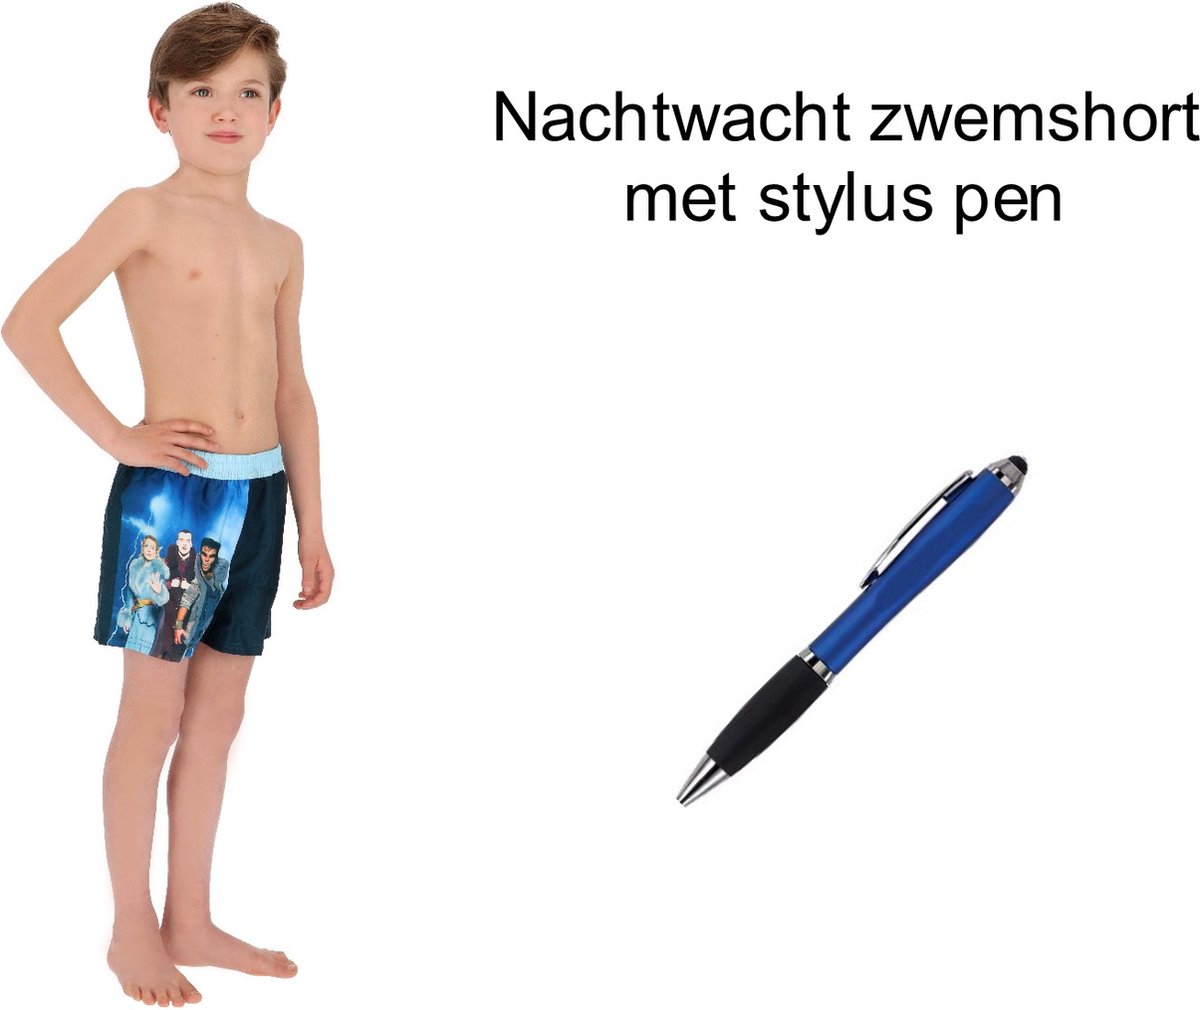 Nachtwacht Zwemshort - Zwembroek - boys. Maat 122/128 cm - 7/8 jaar + EXTRA 1 Stylus Pen.